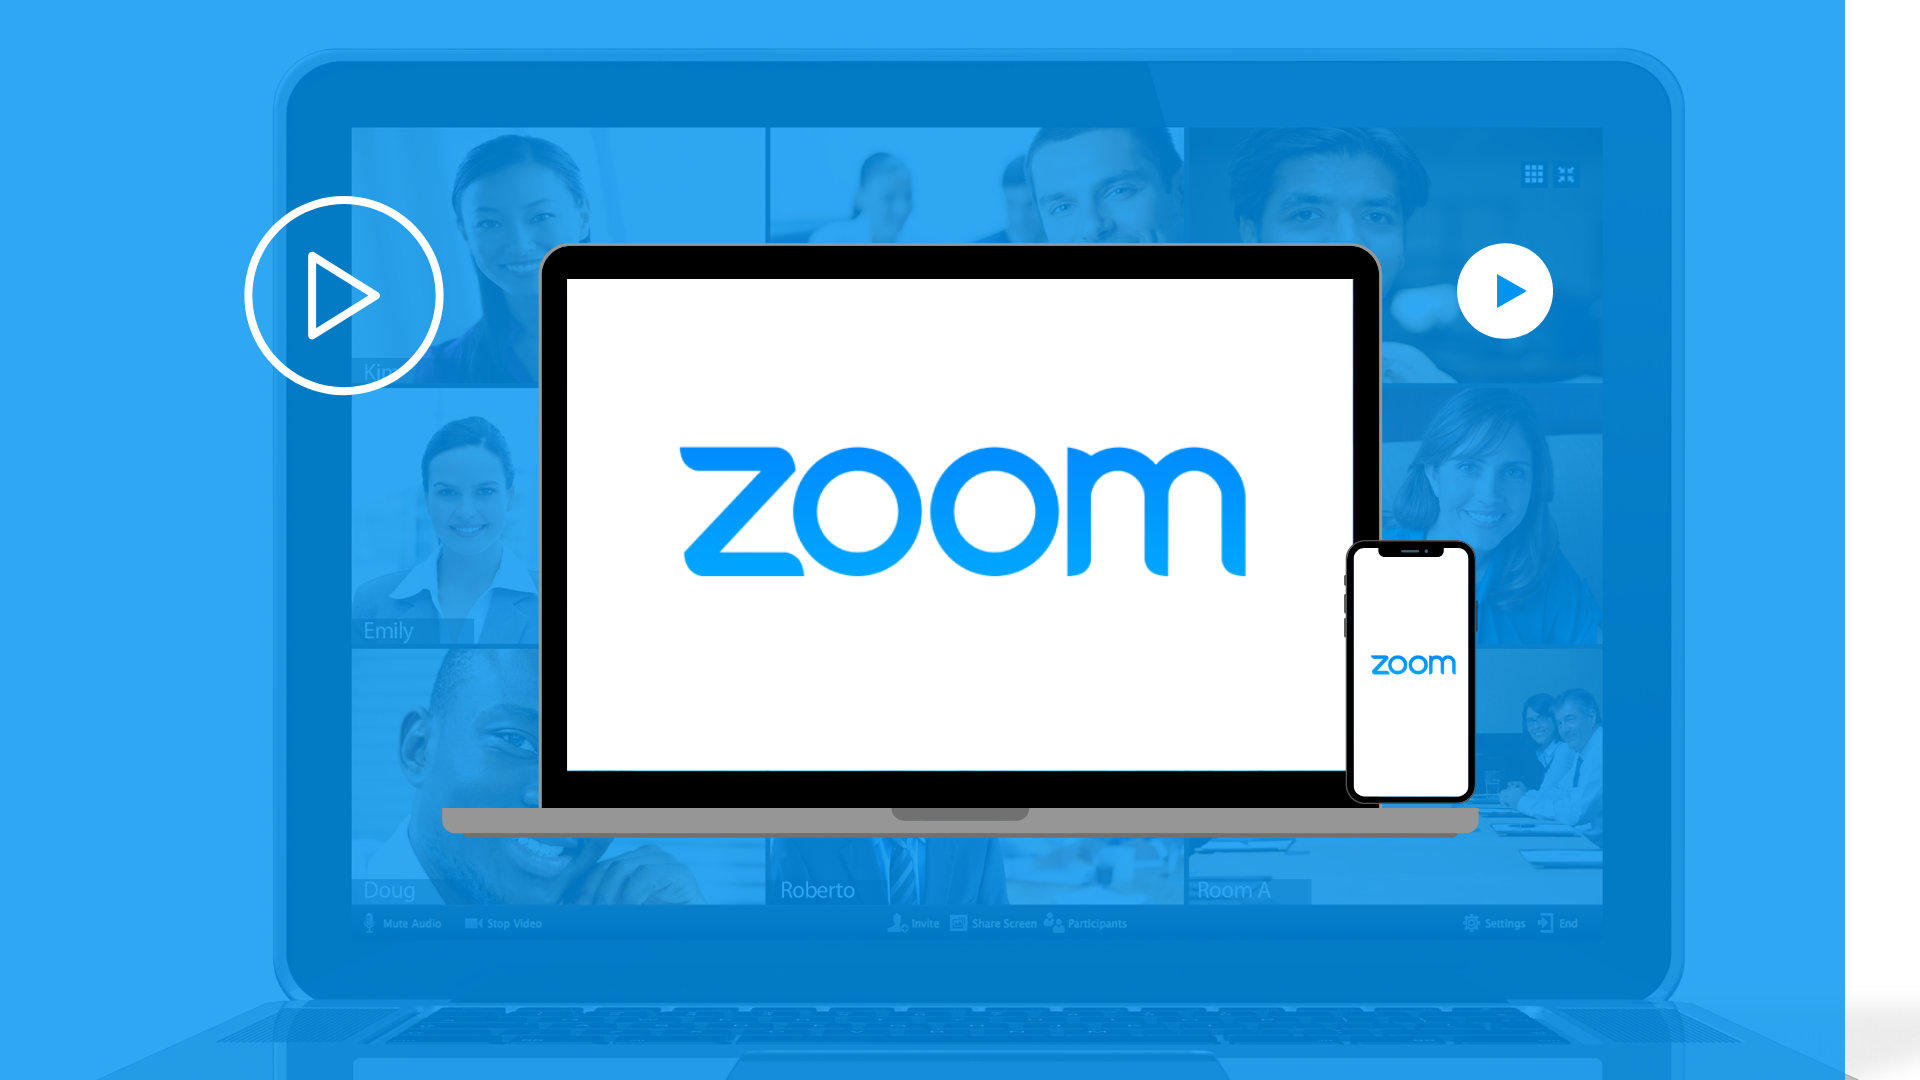 download zoom desktop client windows